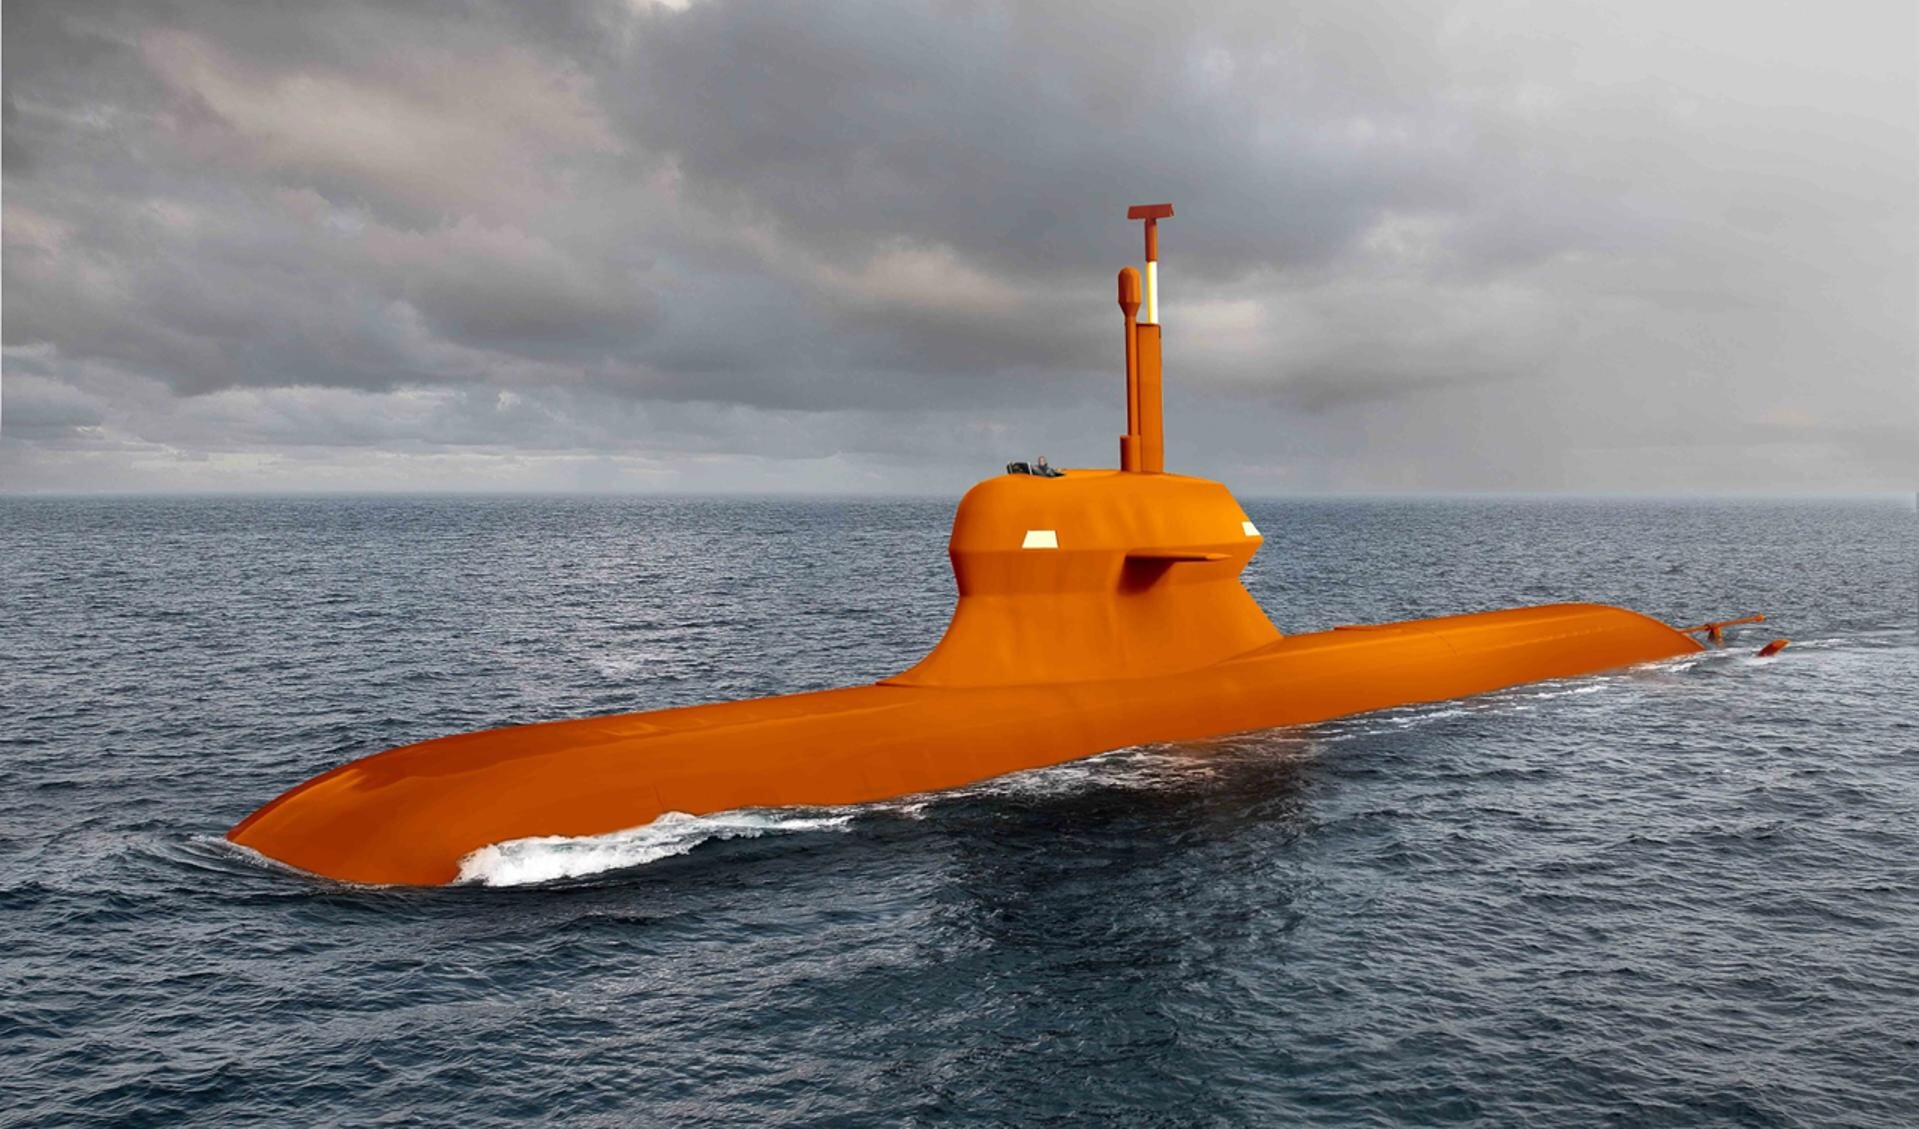 Damen/Saab presenteerde als knipoog een oranje geverfde onderzeeboot.